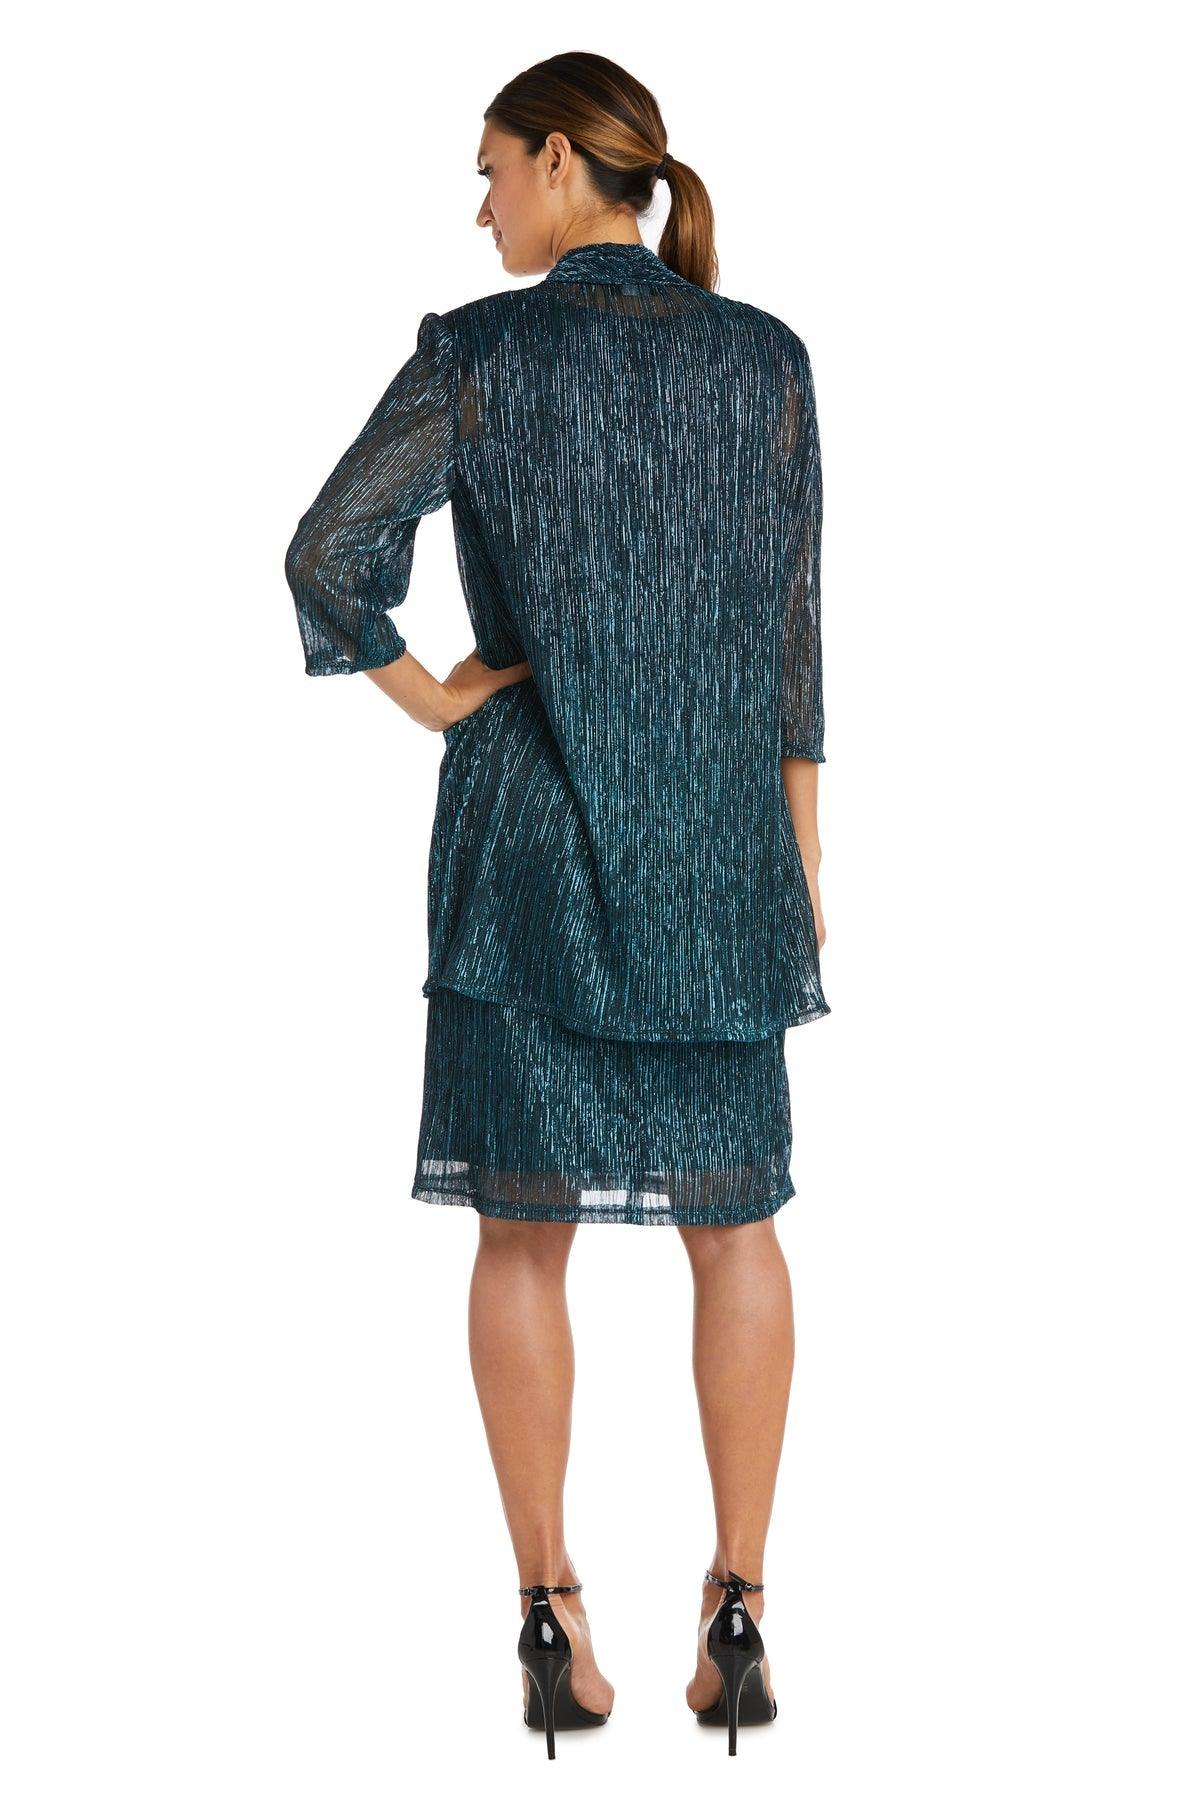 R&M Richards Short Plus Size Jacket Dress 5191W - The Dress Outlet